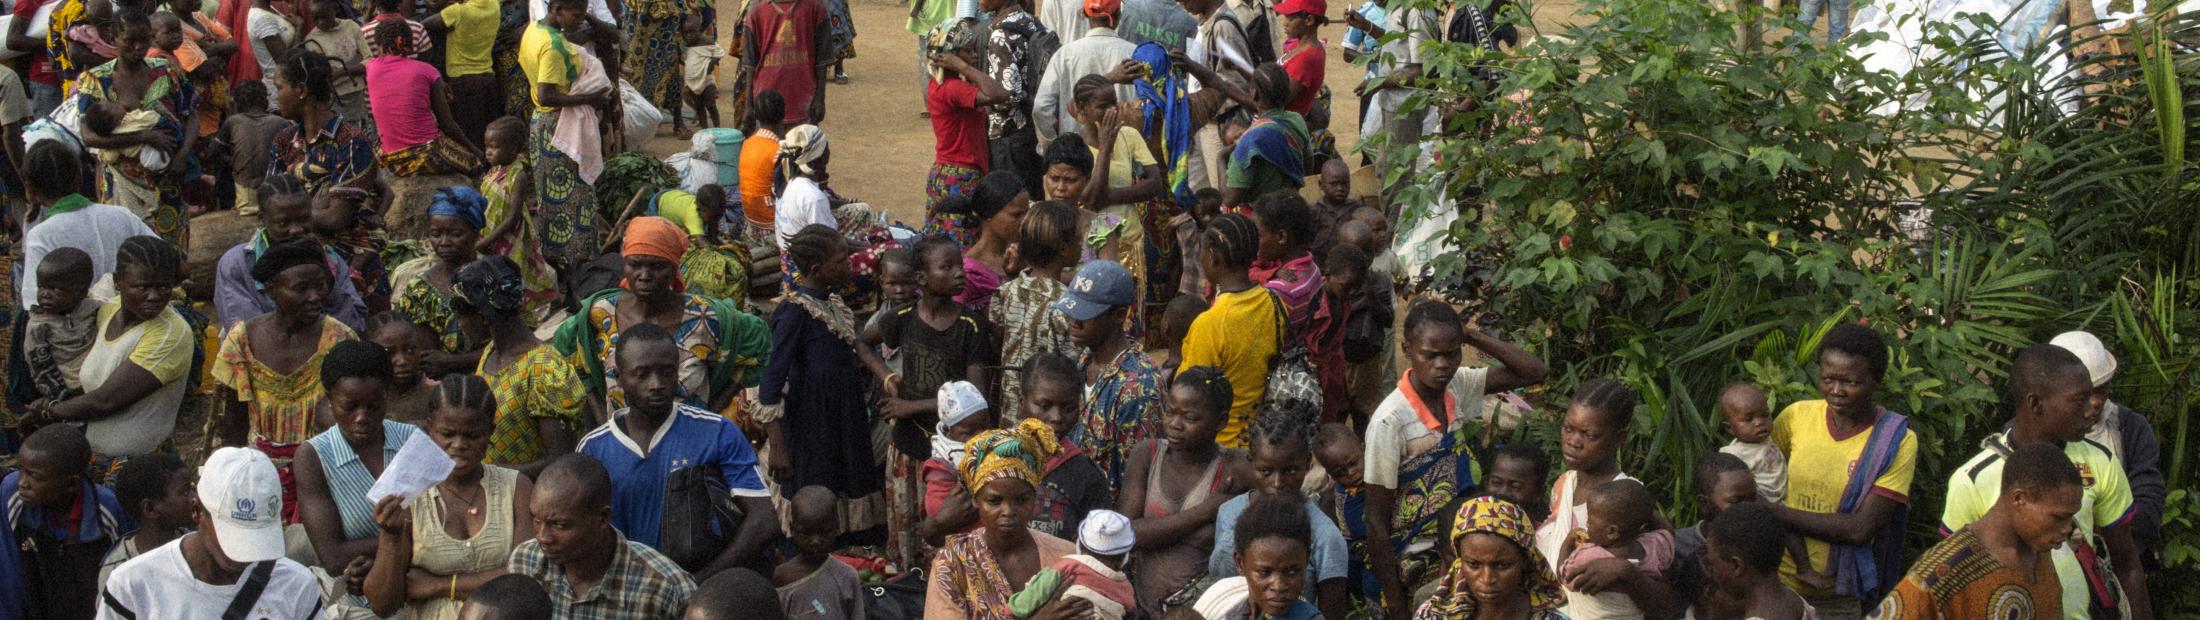 La violencia en República Centroafricana provoca más desplazamientos hacia Congo